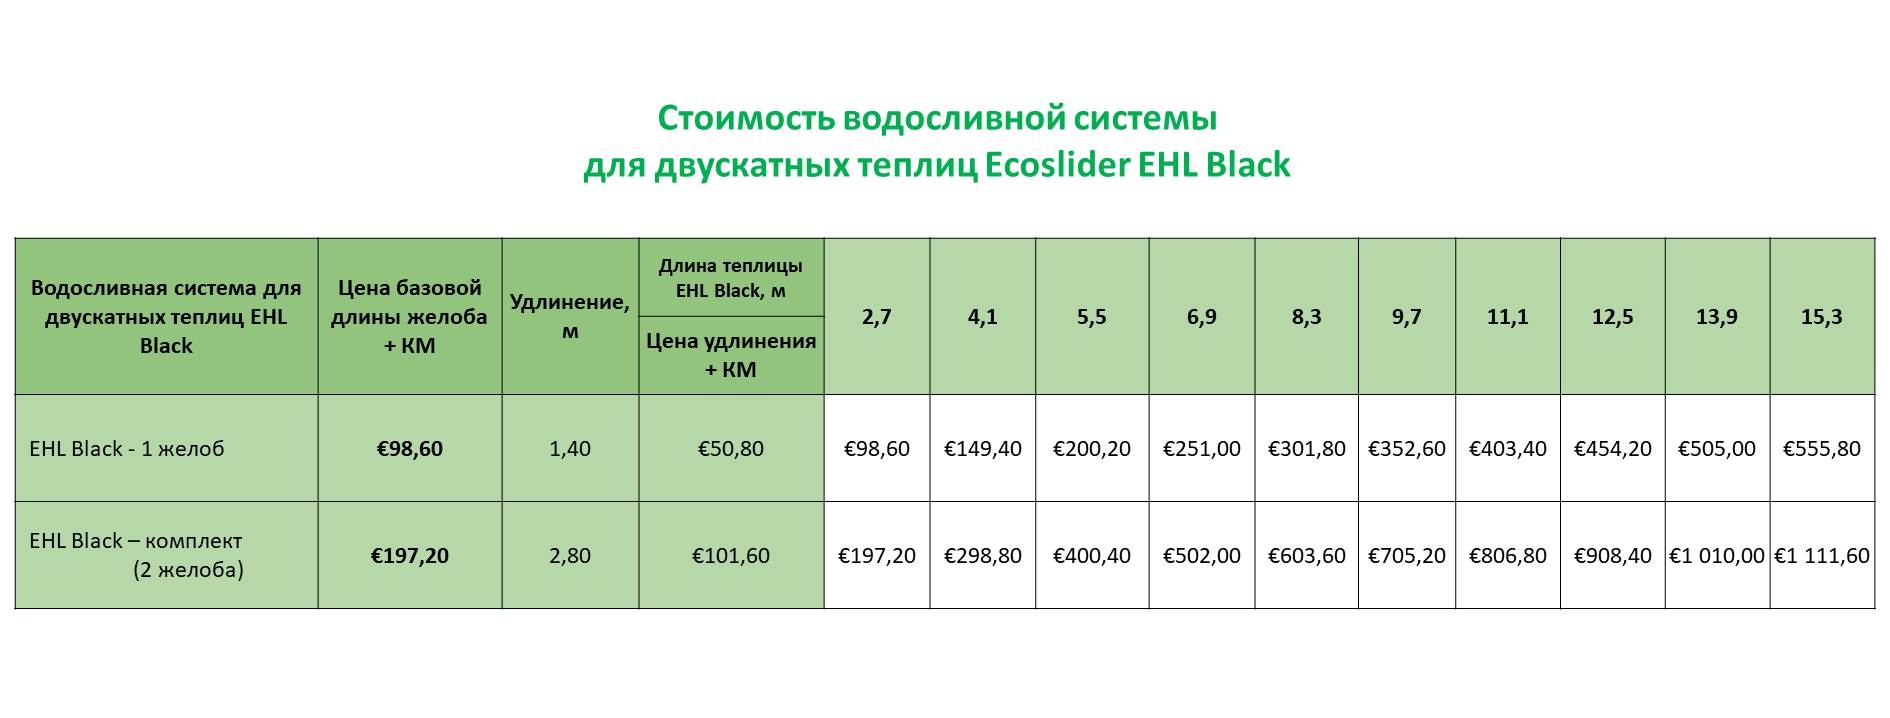 Стоимость водосливной системы Ecoslider EHL Black